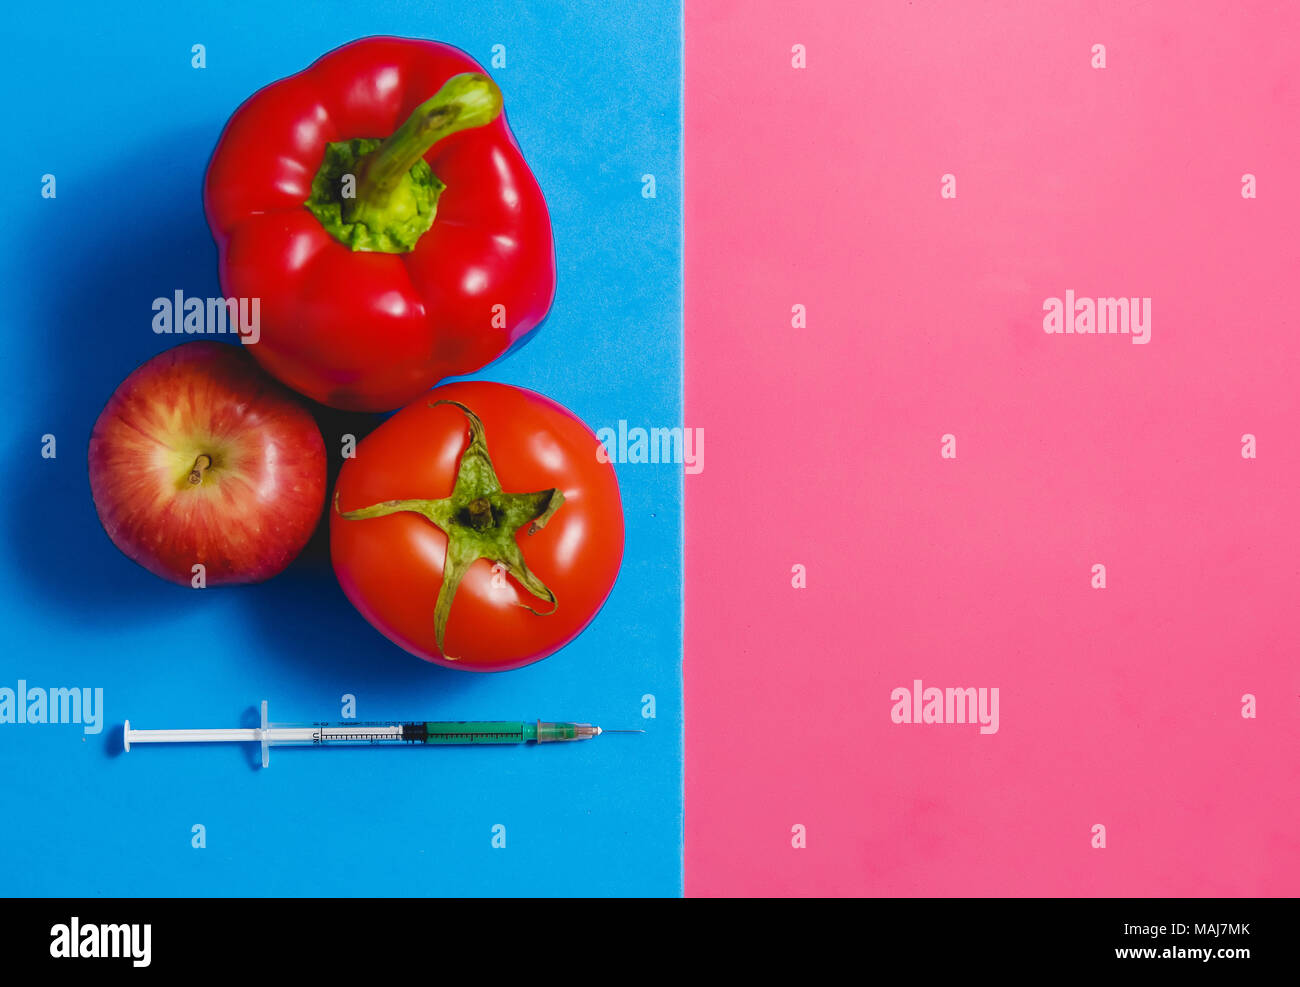 Green liquido nella siringa, rosso pomodoro, Apple, pepe. Alimenti geneticamente modificati concetto su Rosa Blu. Foto Stock